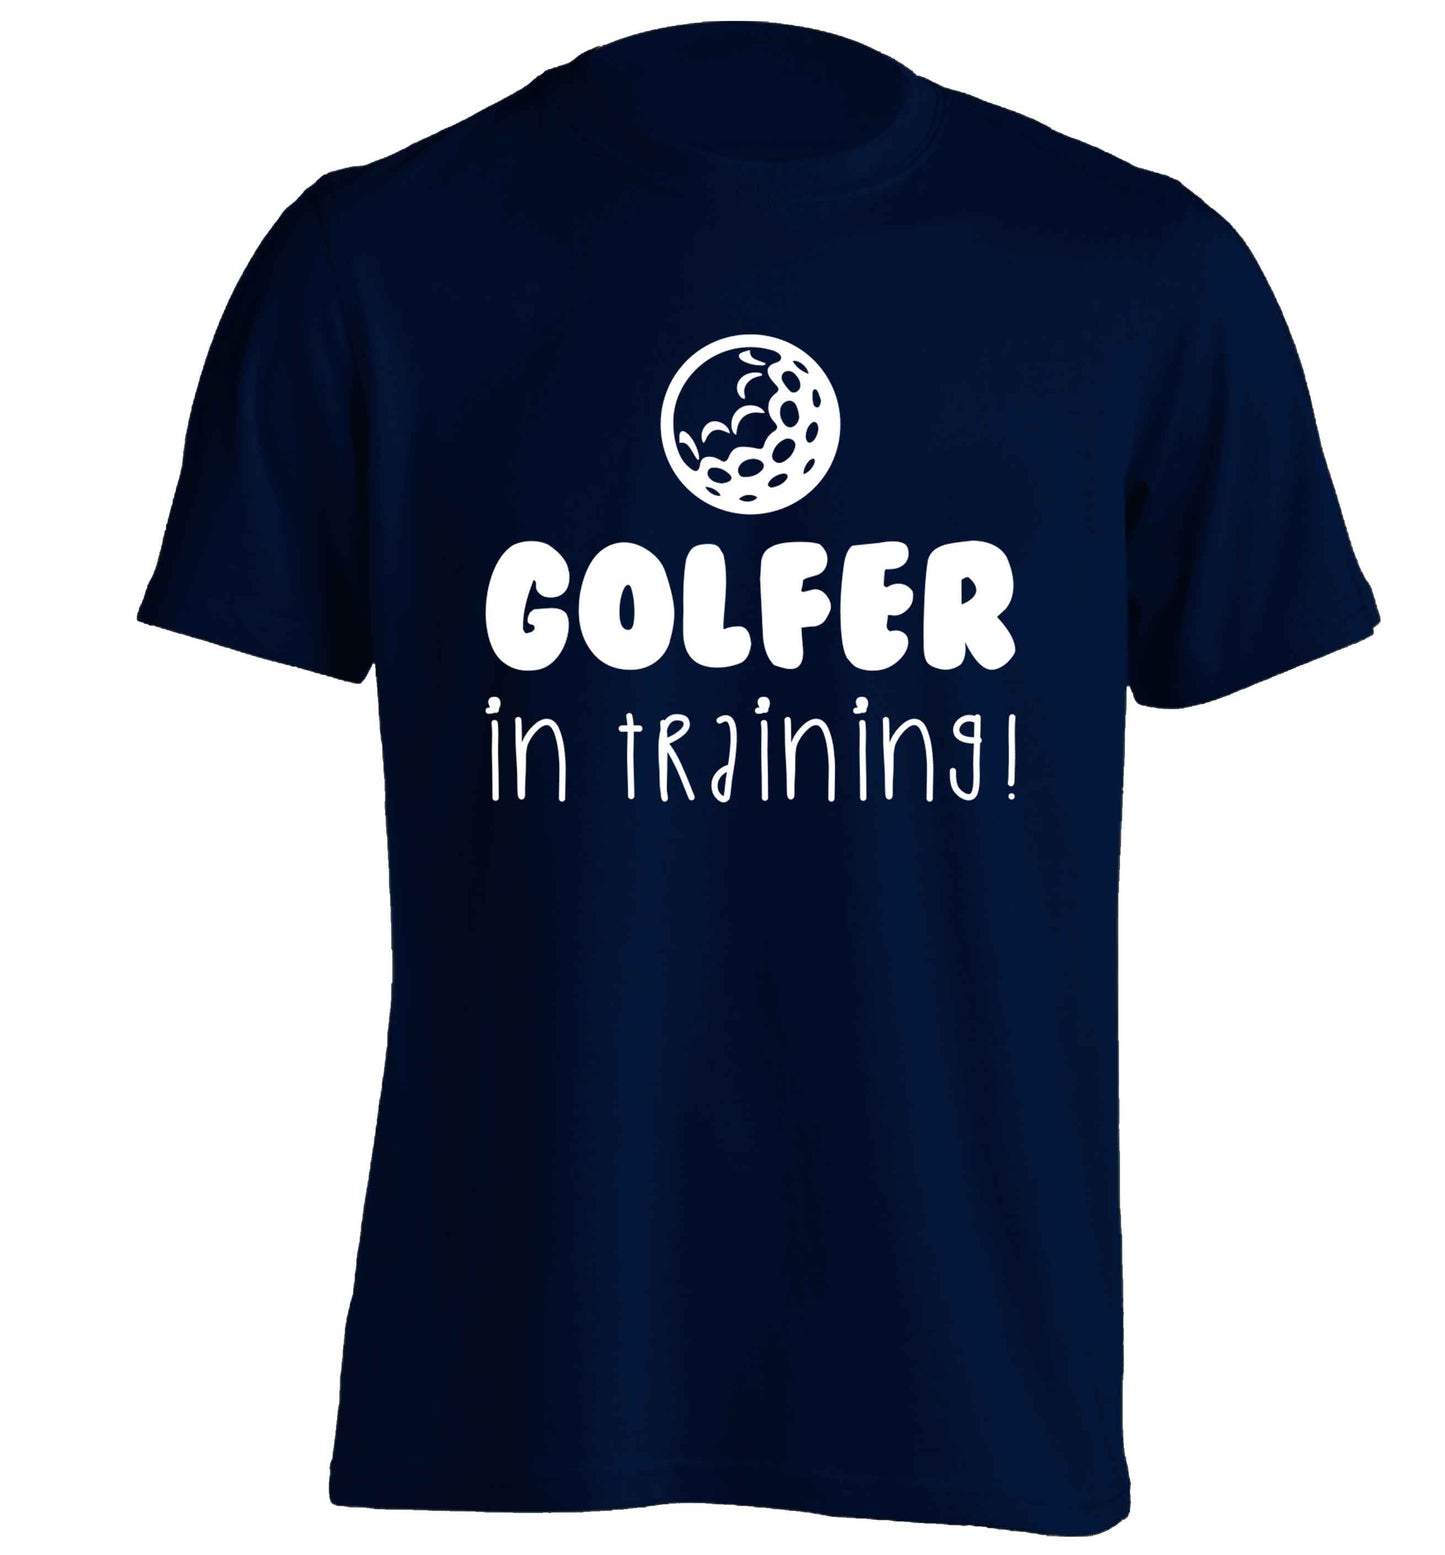 Golfer in training adults unisex navy Tshirt 2XL